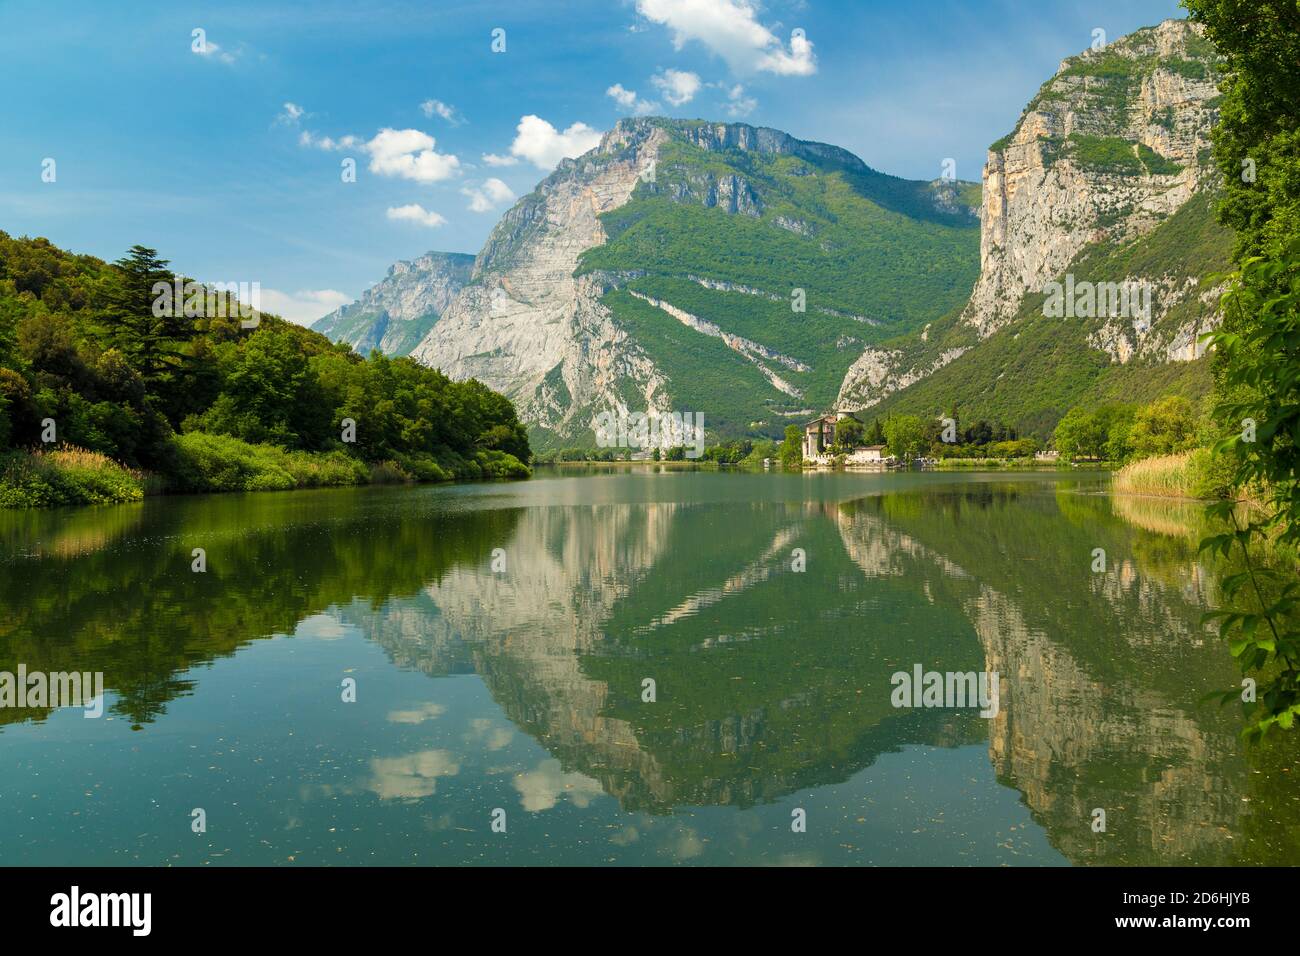 Lago Toblino, one of Italy's hidden lakes, Italian Lakes, Italy. Stock Photo